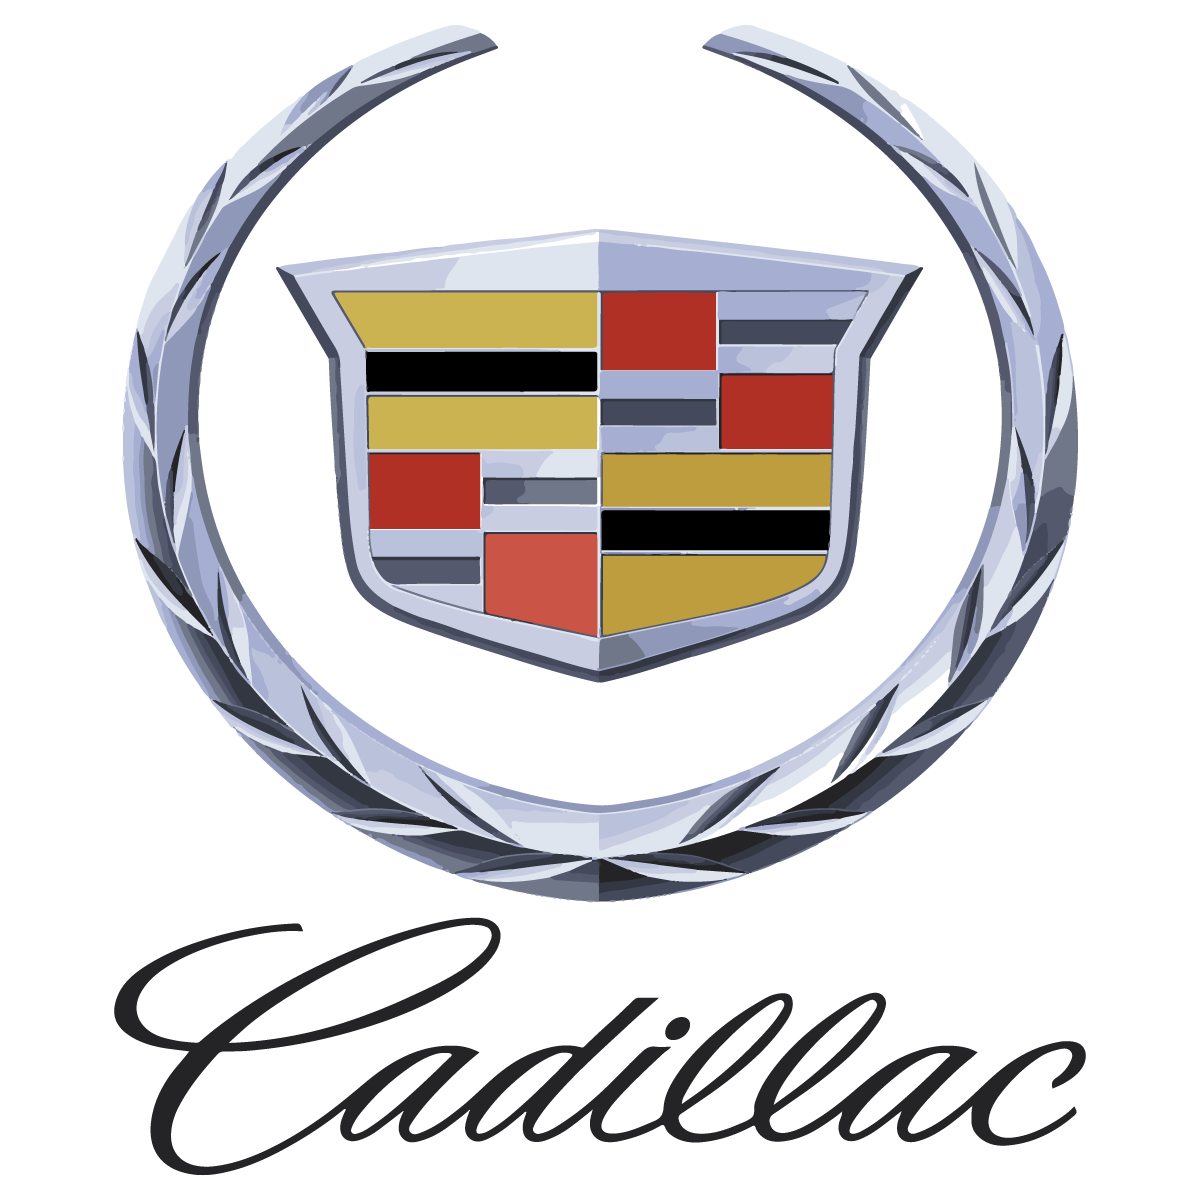 Марка автомобиля Кадиллак лого. Значок автомобиля Cadillac. Значок Кадиллака и Джилли. Кадиллак Geely.